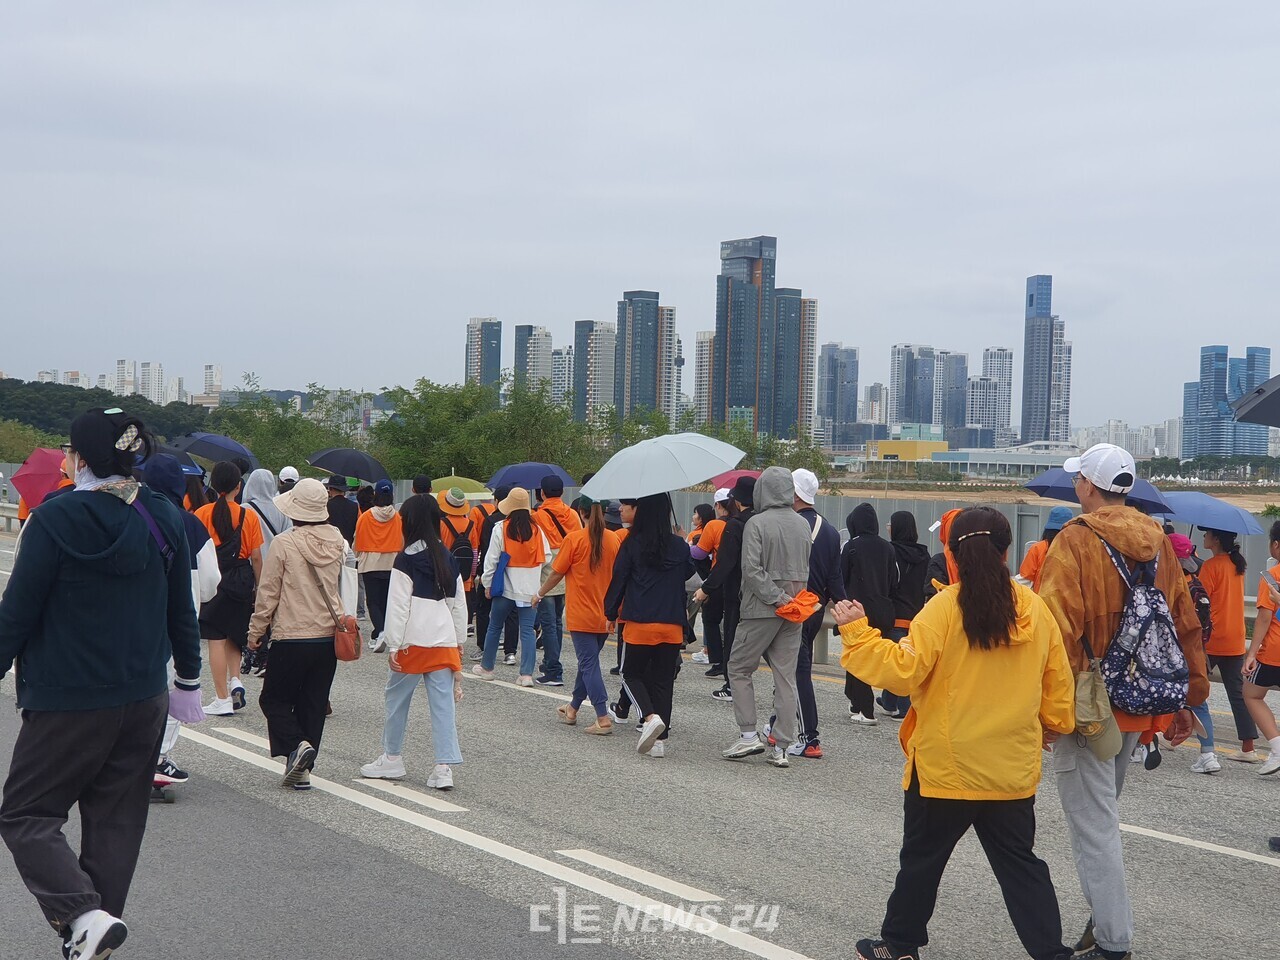 국지도 96호선을 처음으로 두발로 걷는 참가자들. 김다소미 기자. 